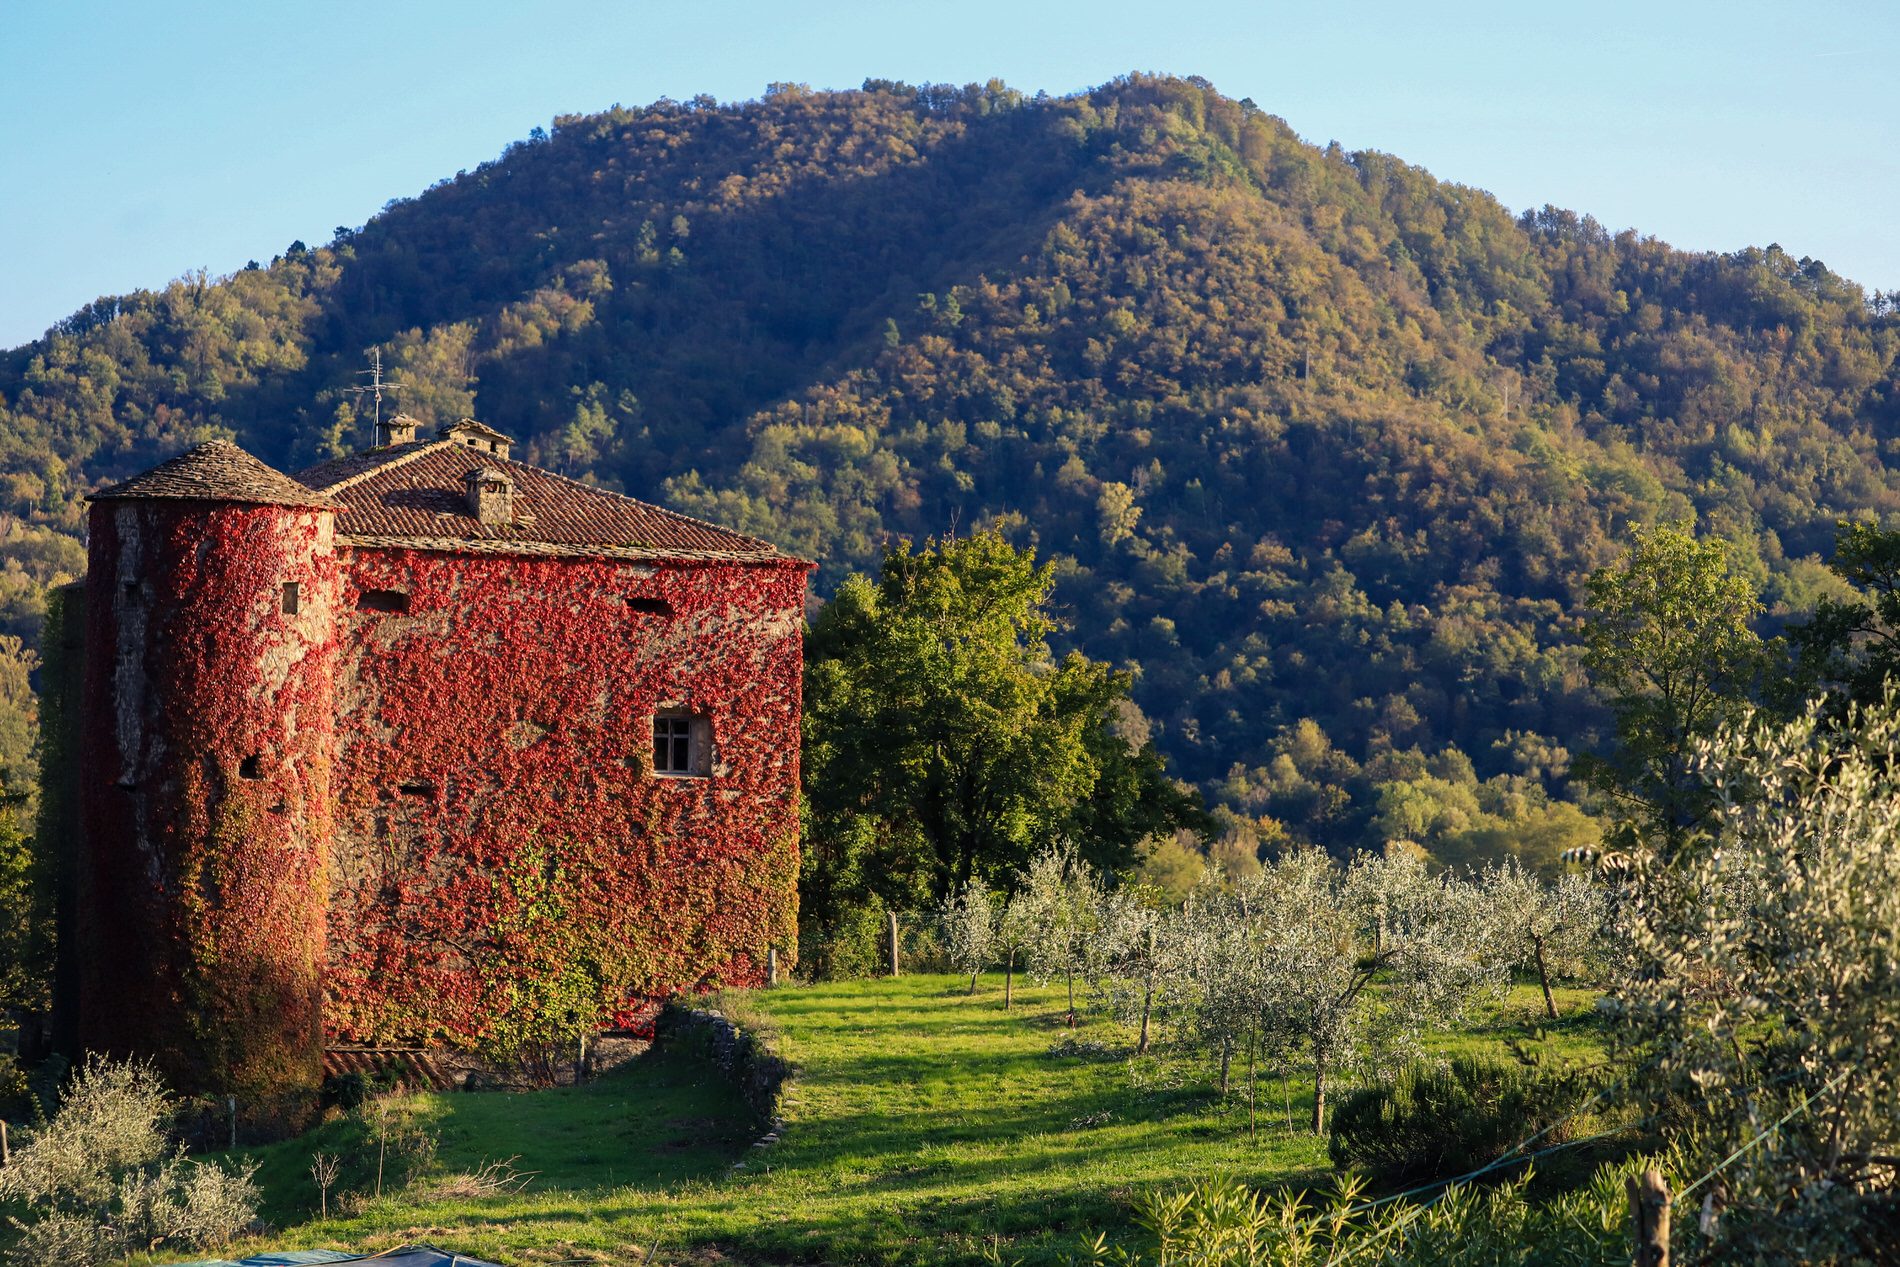 Castello-di-Villa-di-Tresana-Podenzana-Cosa-Fare-Castelli-Lunigiana